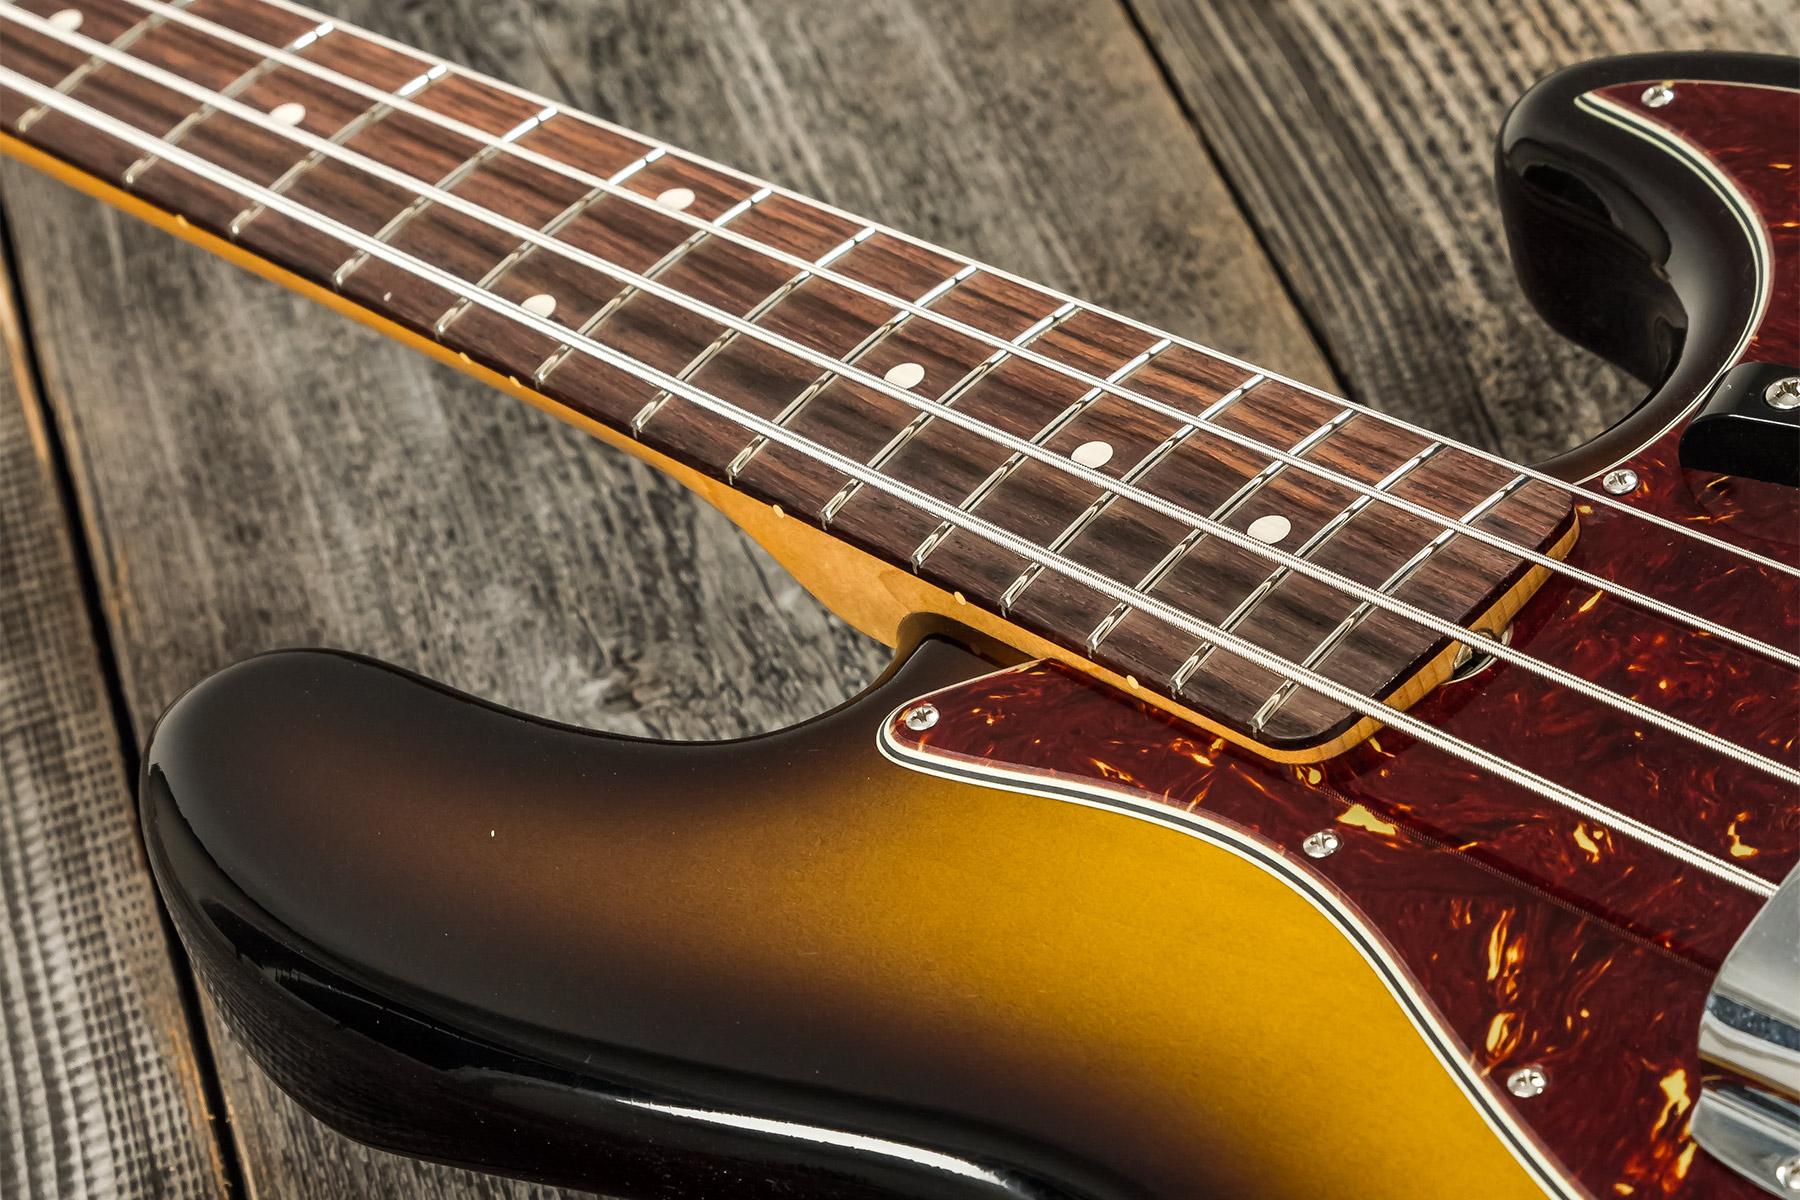 Fender Custom Shop Jazz Bass 1964 Rw #r126513 - Closet Classic 2-color Sunburst - Solidbody E-bass - Variation 4